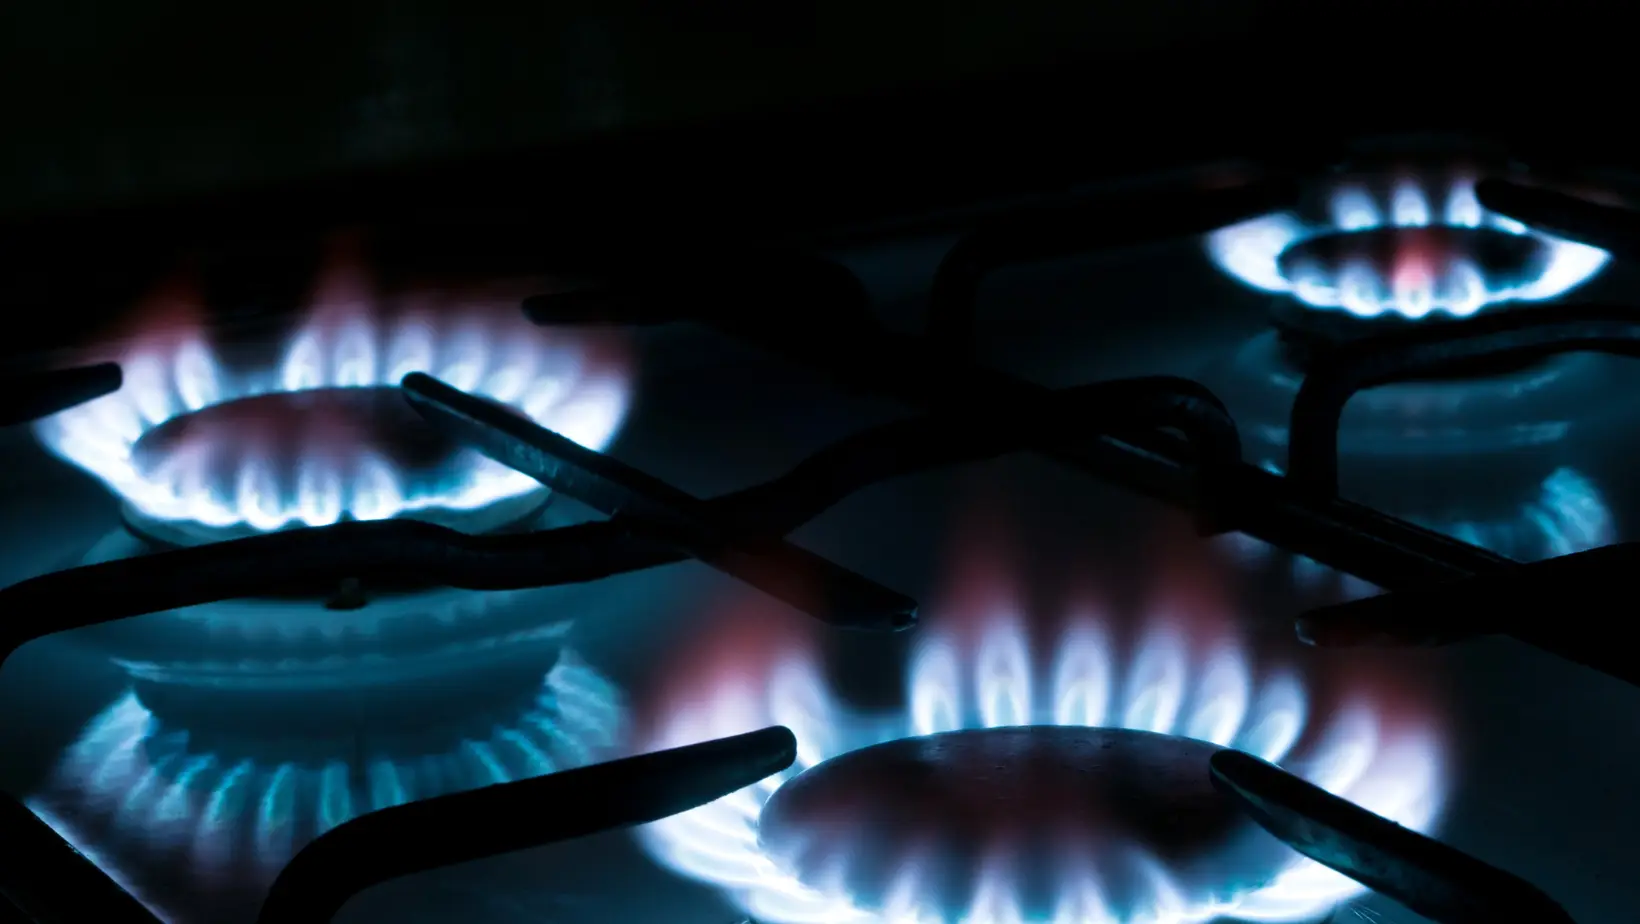 Gases dos fogões a gás prejudicam a saúde, especialmente das crianças